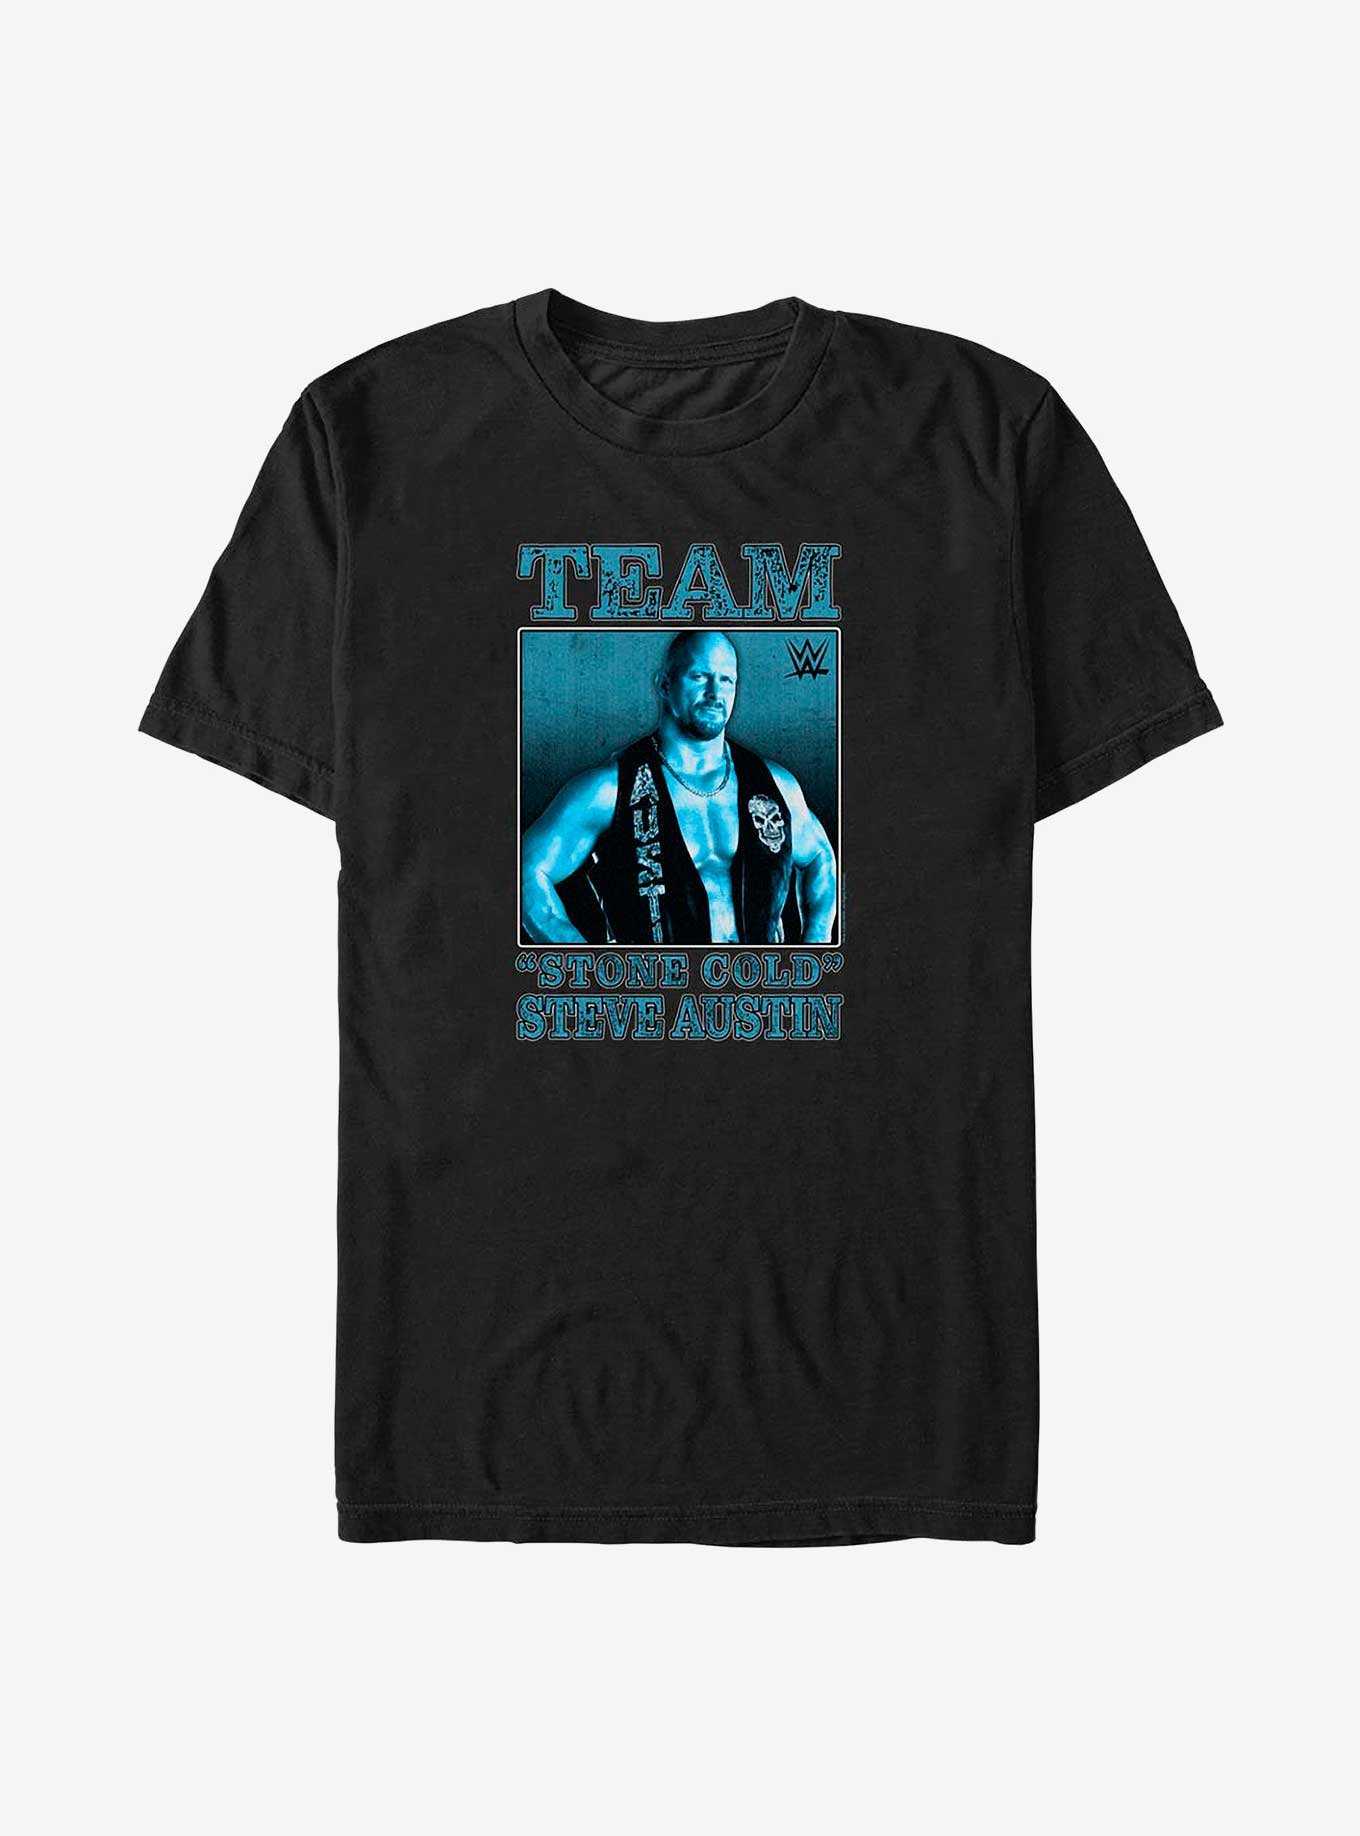 WWE Team Stone Cold Steve Austin T-Shirt, , hi-res